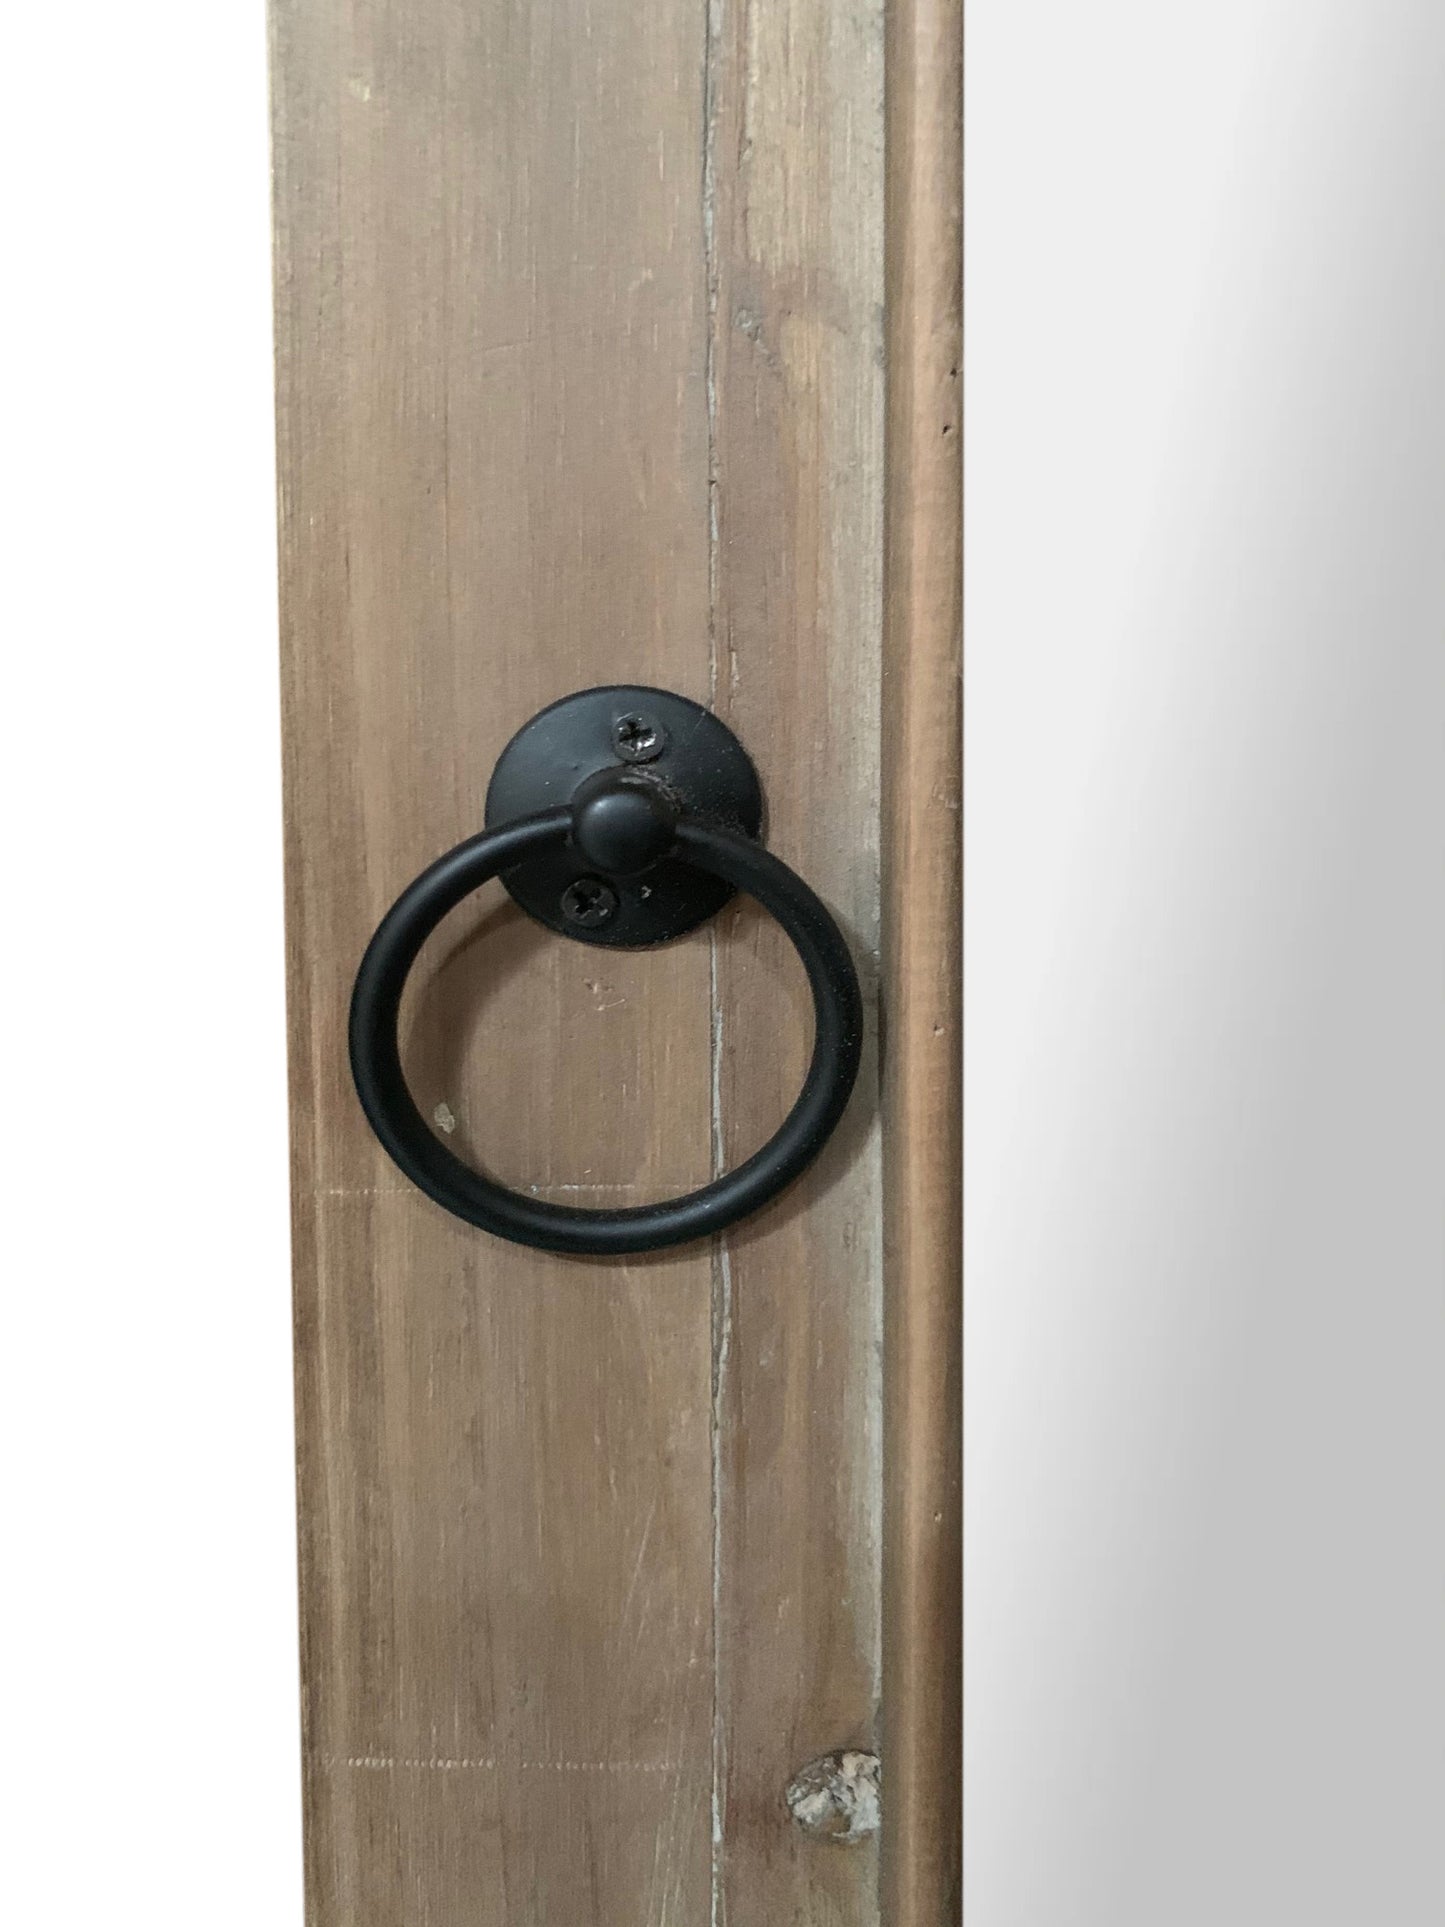 Rectangular Rustic Door Design Leaning Mirror with Door Hinge By Homeroots | Mirrors | Modishstore - 2